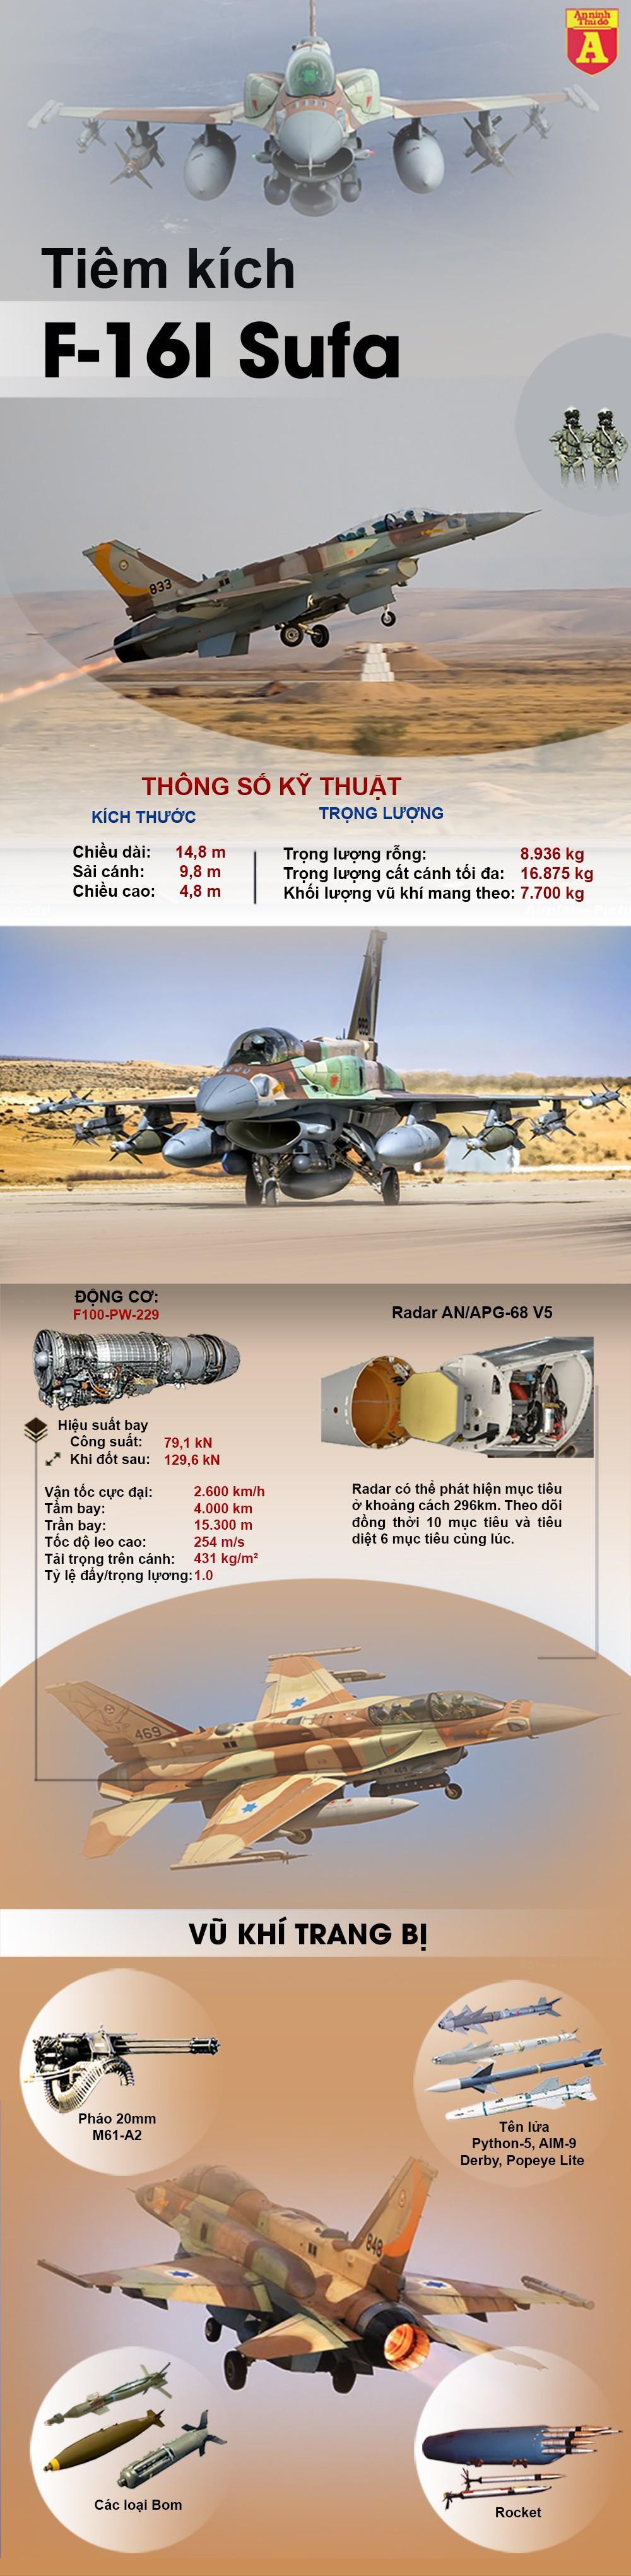 Tiêm kích F-16I Sufa - một phần sức mạnh của Không quân Israel  - Ảnh 1